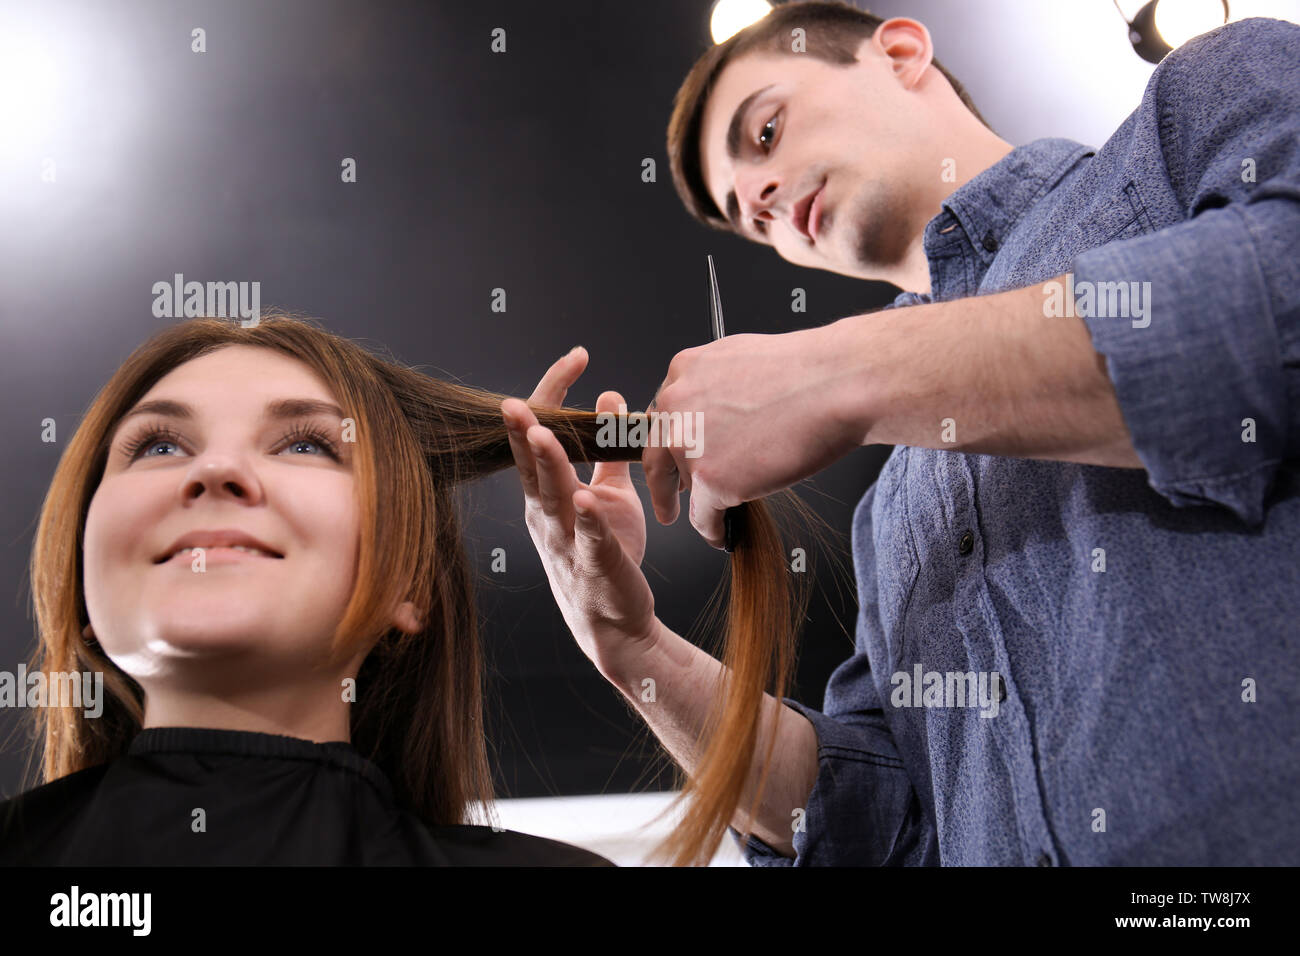 Mannliche Friseur Haare Schneiden Des Kunden Im Salon Stockfotografie Alamy